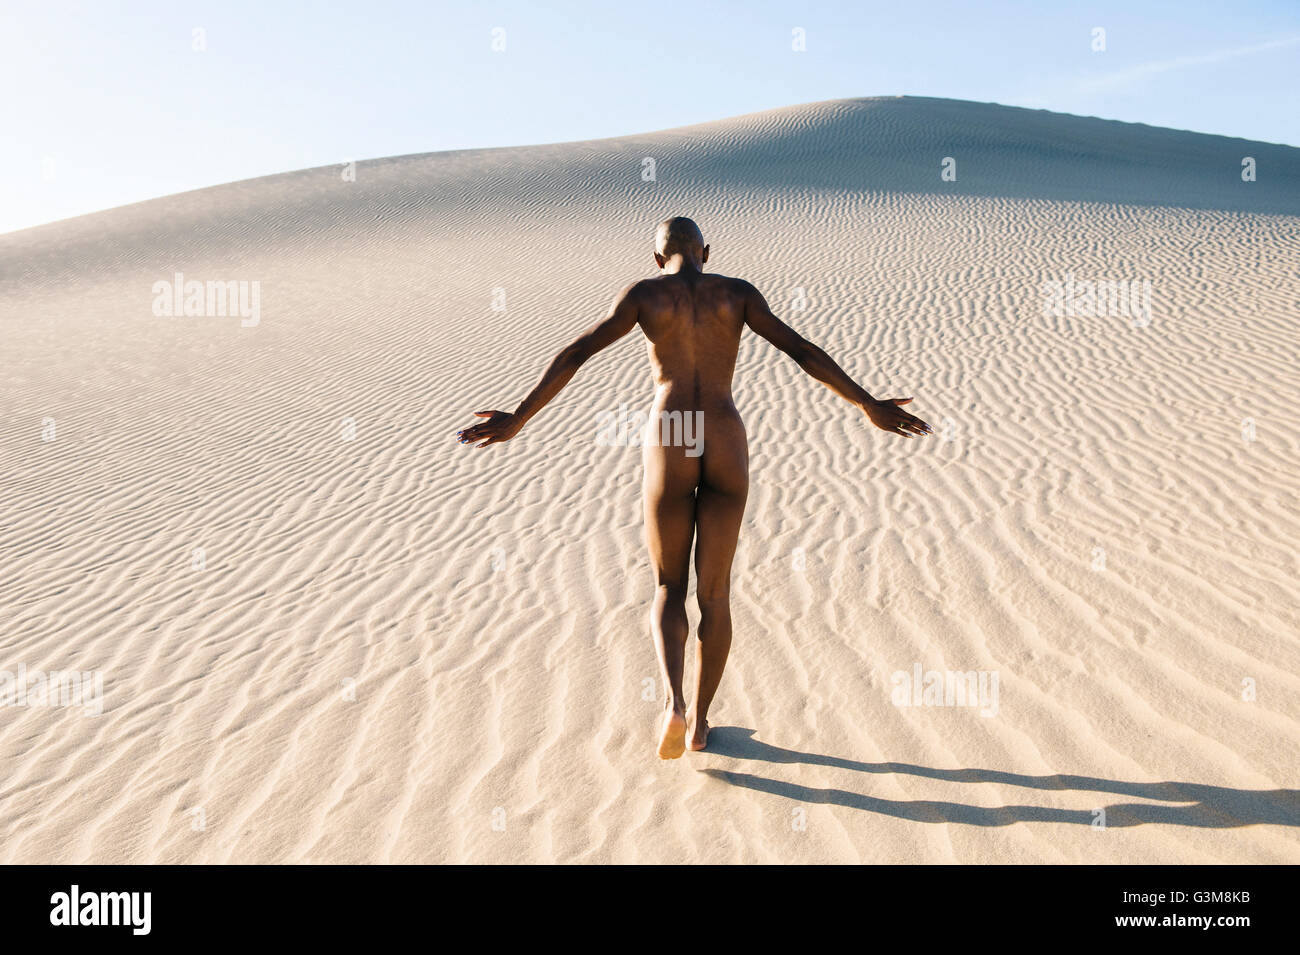 Vue arrière de femme nue dans le désert Banque D'Images